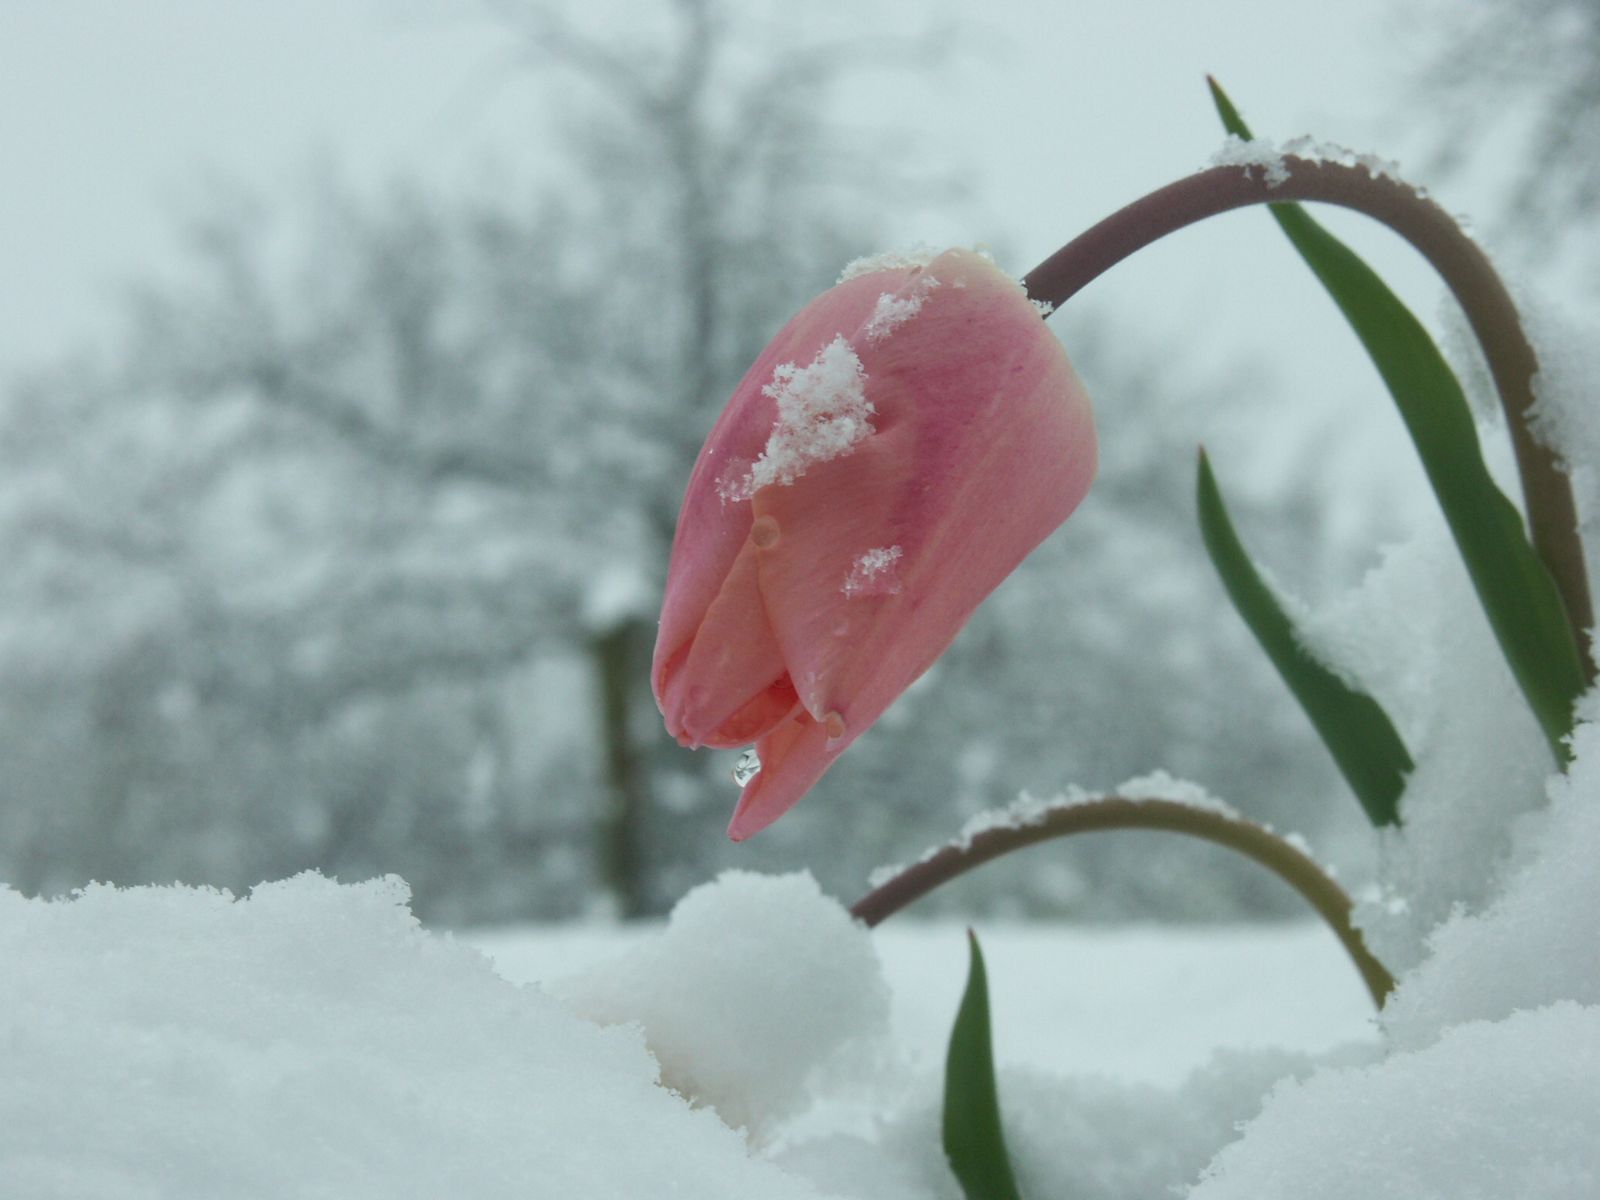 Tomorrow's Memories: A frozen place, somewhere near. Winter flowers, Flower beauty, Flowers